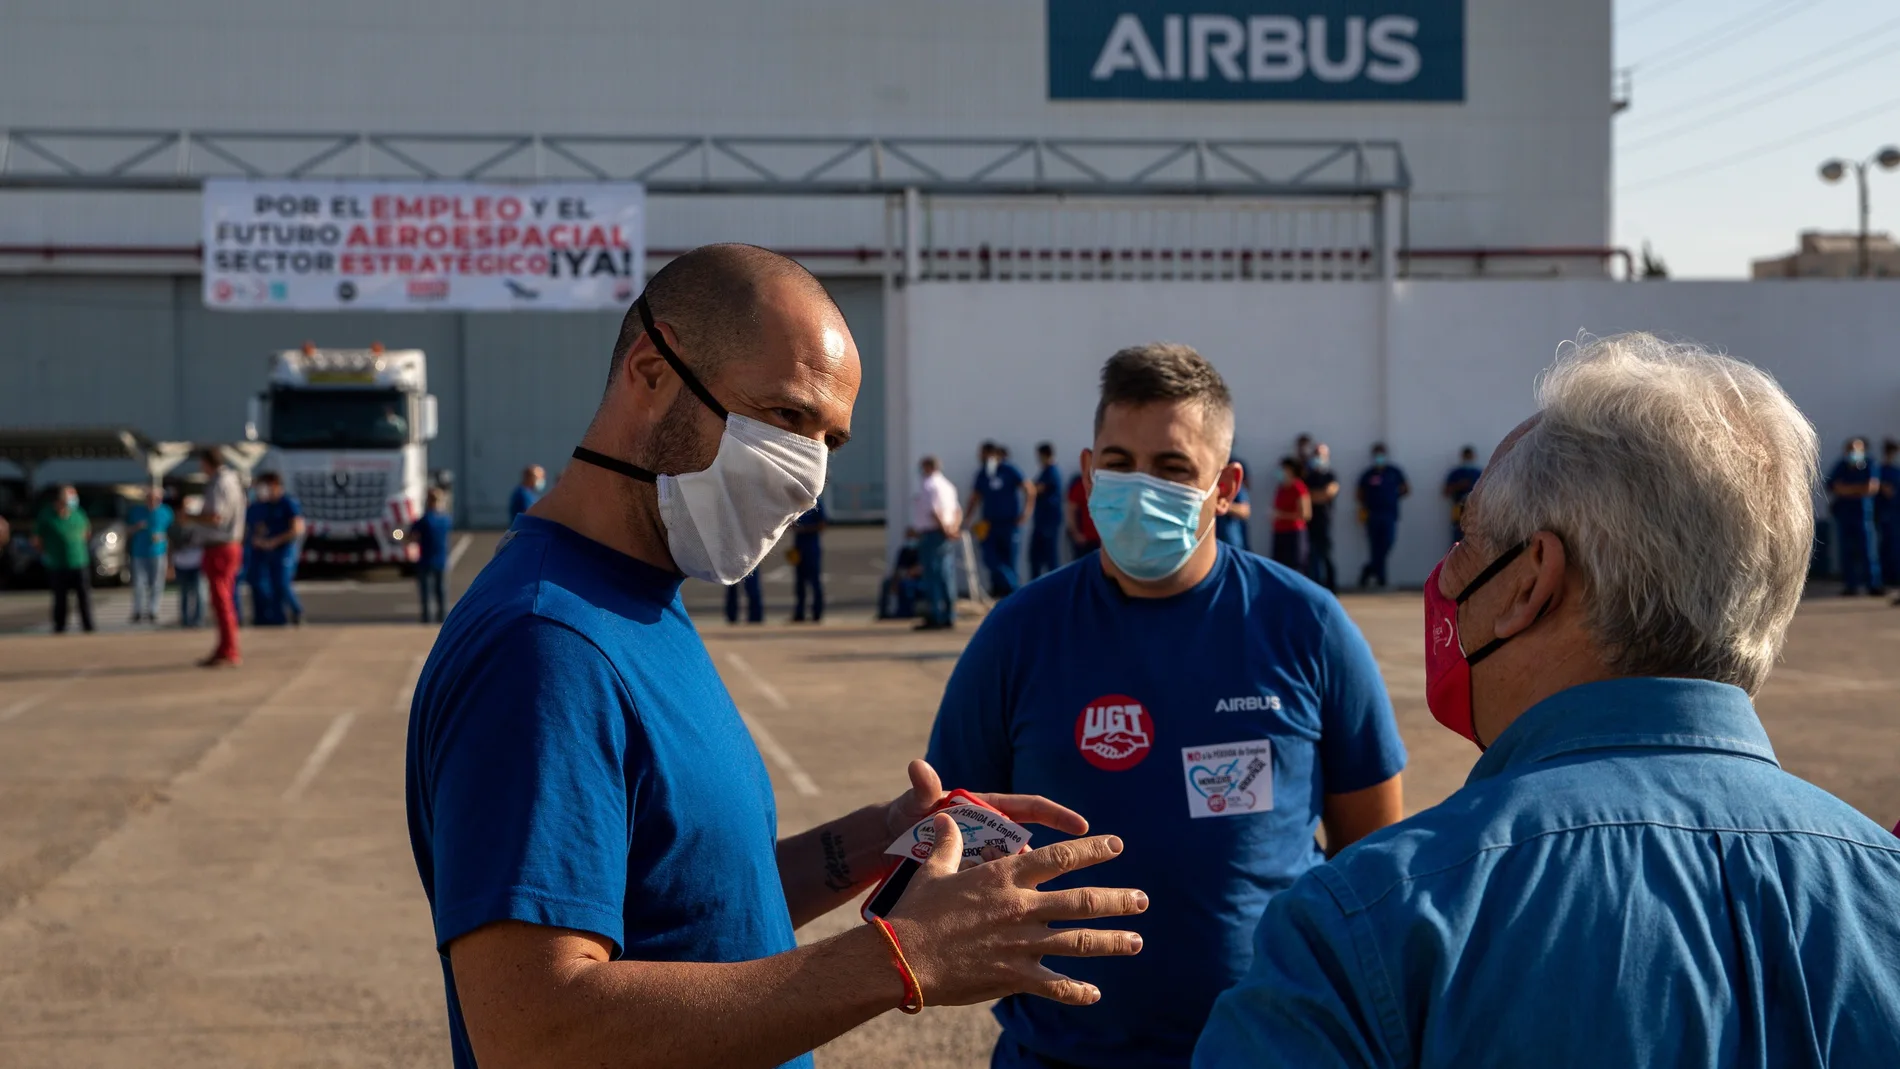 Trabajadores de Airbus en Sevilla se movilizan en defensa del futuro del sector aeronáutico